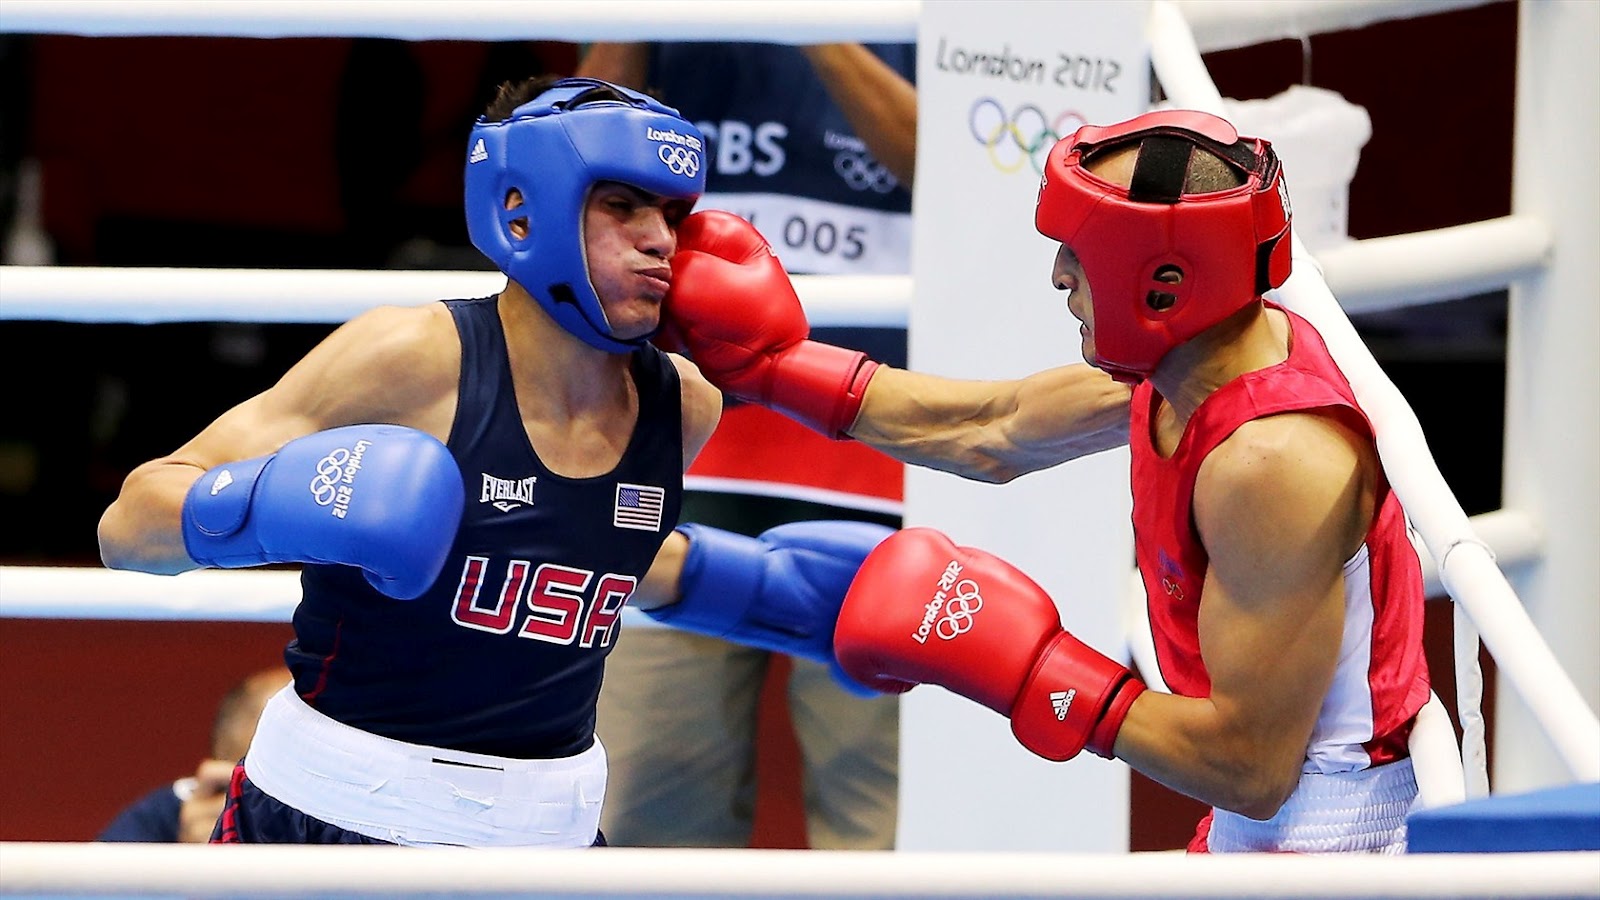 Sport box 2. Бокс соревнования США. Бокс спорт сильных. Olympics 2012 Boxing Clemente Russo.